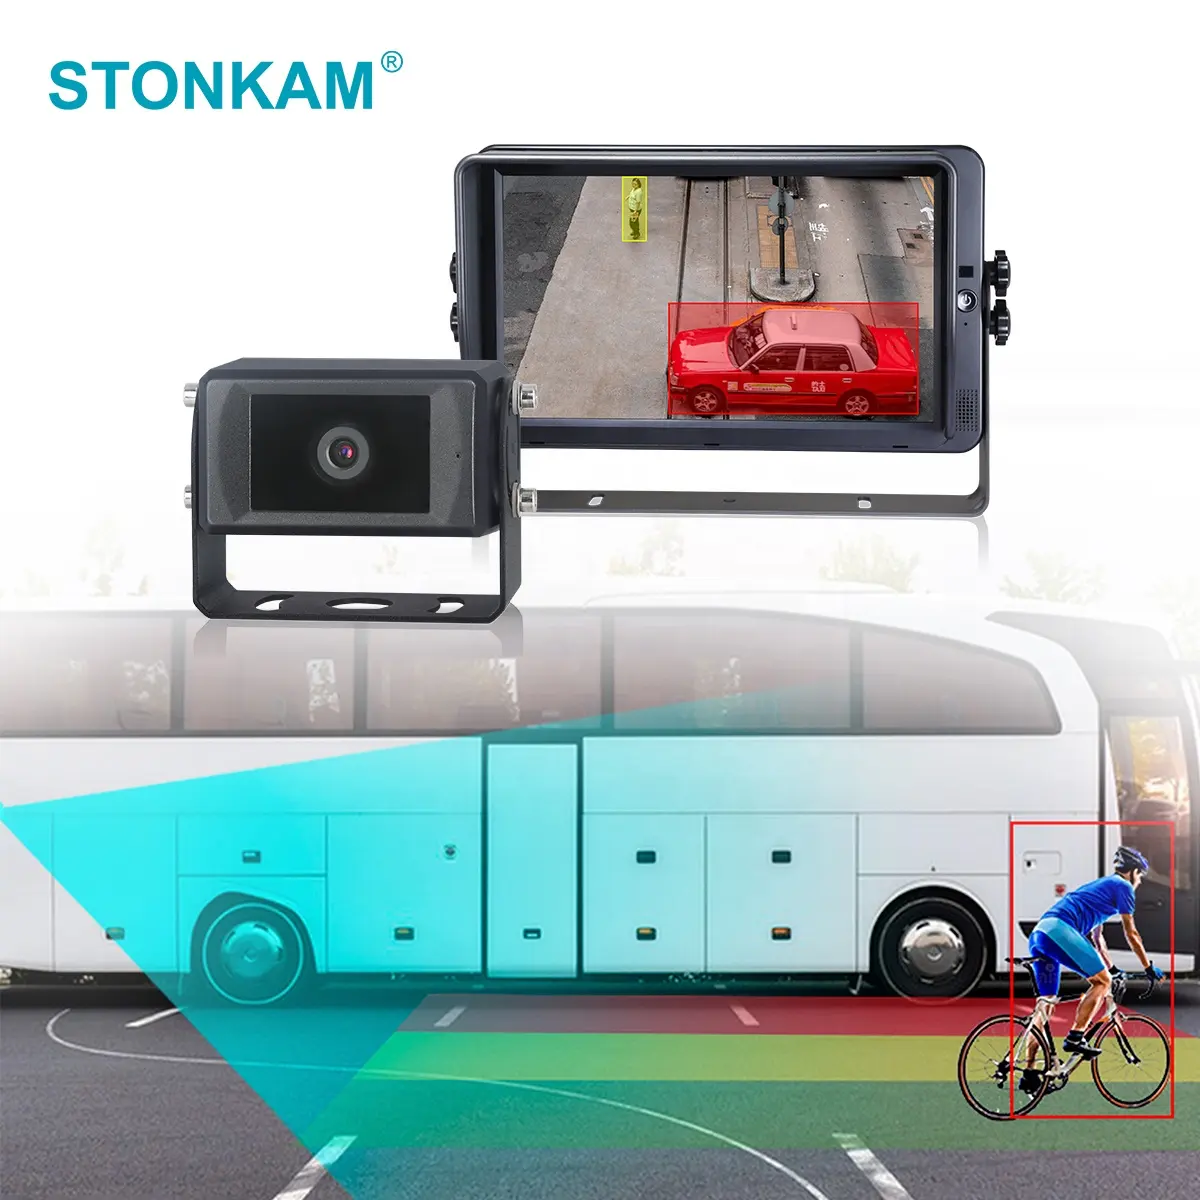 STONKAM New Design Bus AI Fußgänger erkennungs kamera Blind Spot Detection System, das Fußgänger und Fahrzeuge erkennen kann